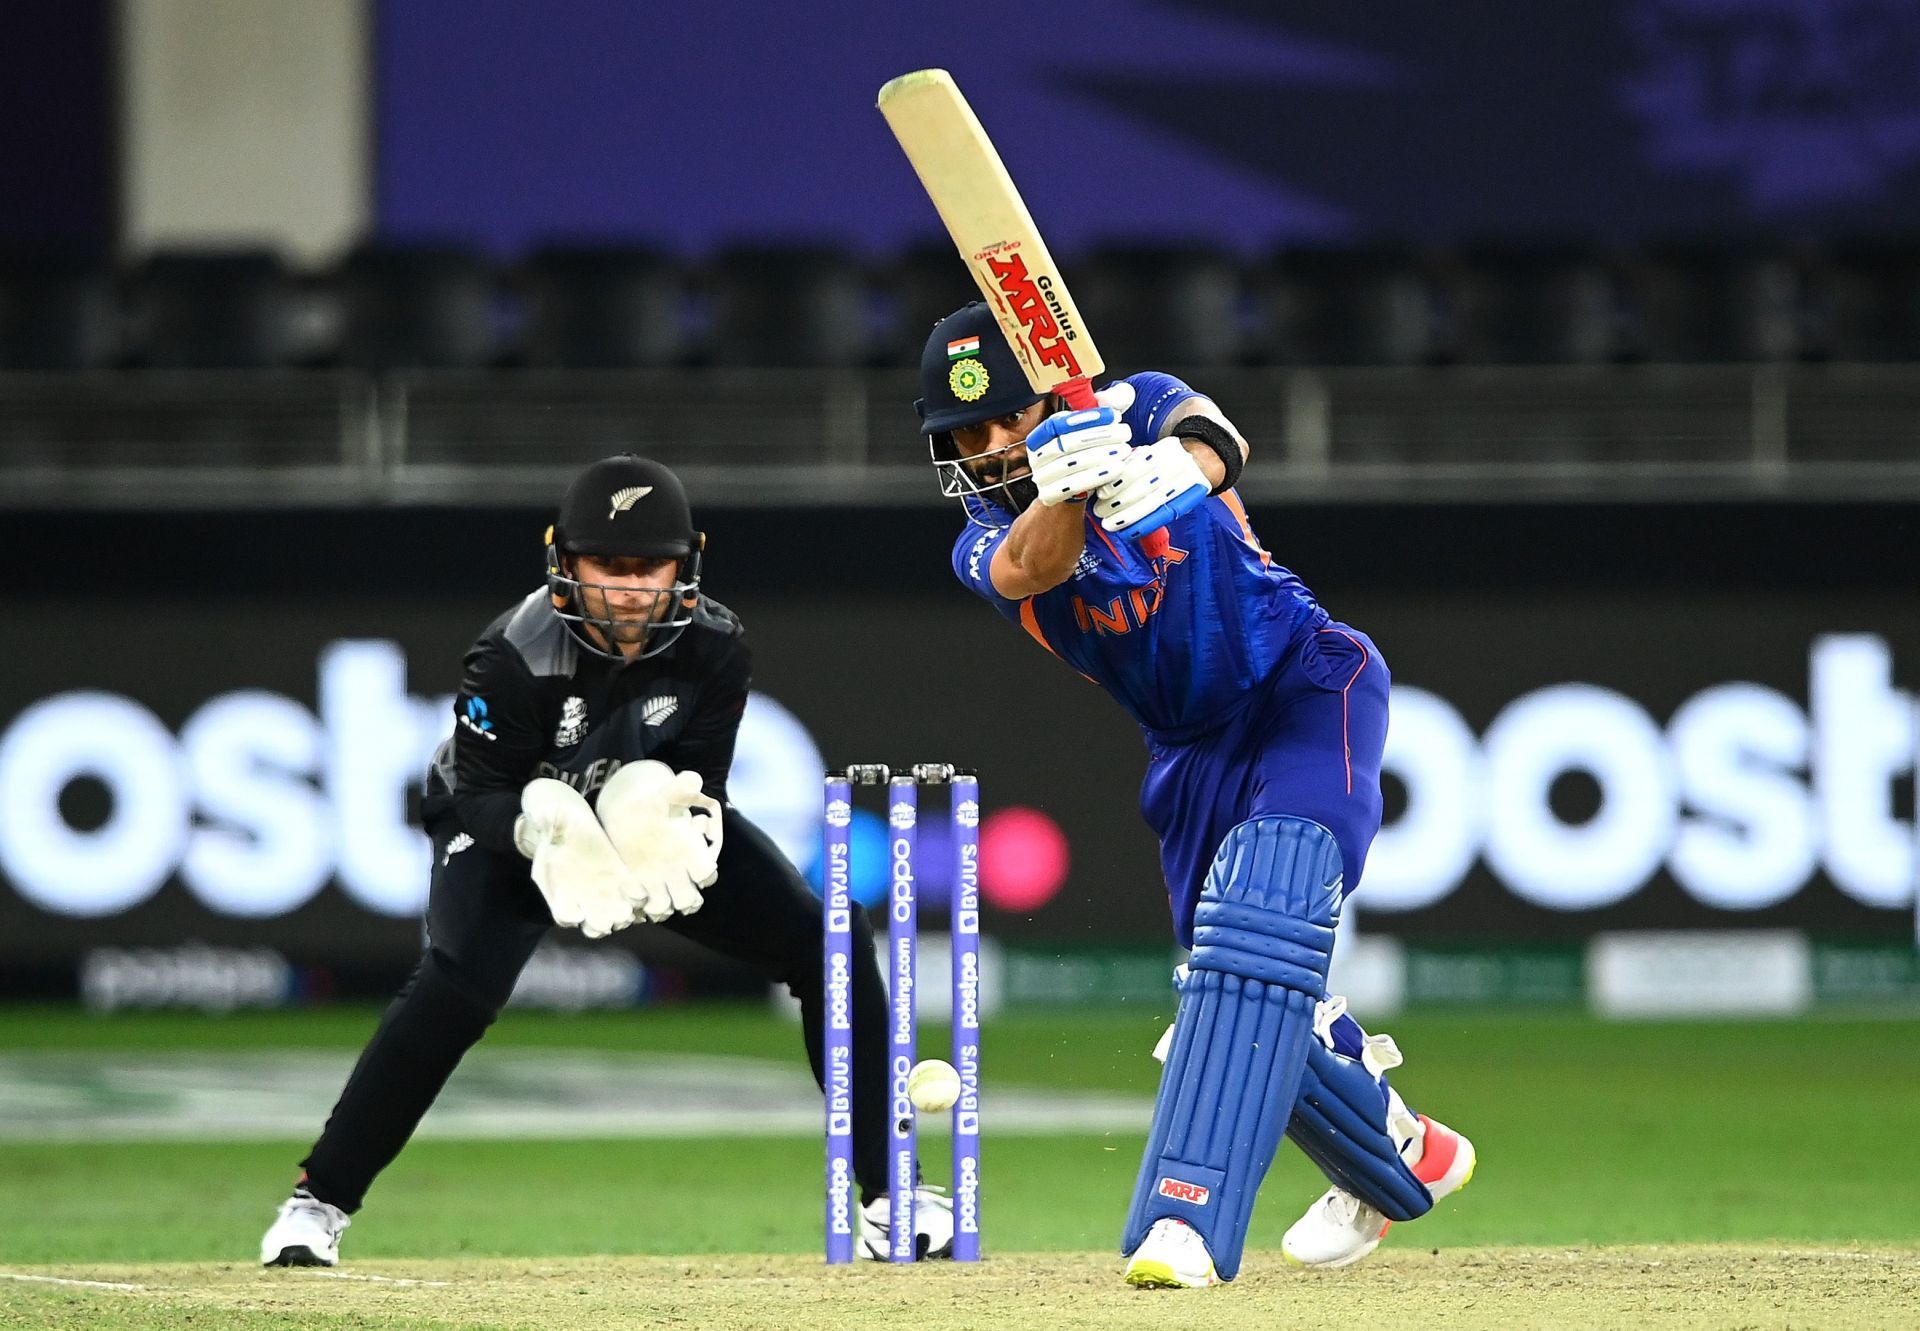 Virat Kohli is known to gradually build his innings